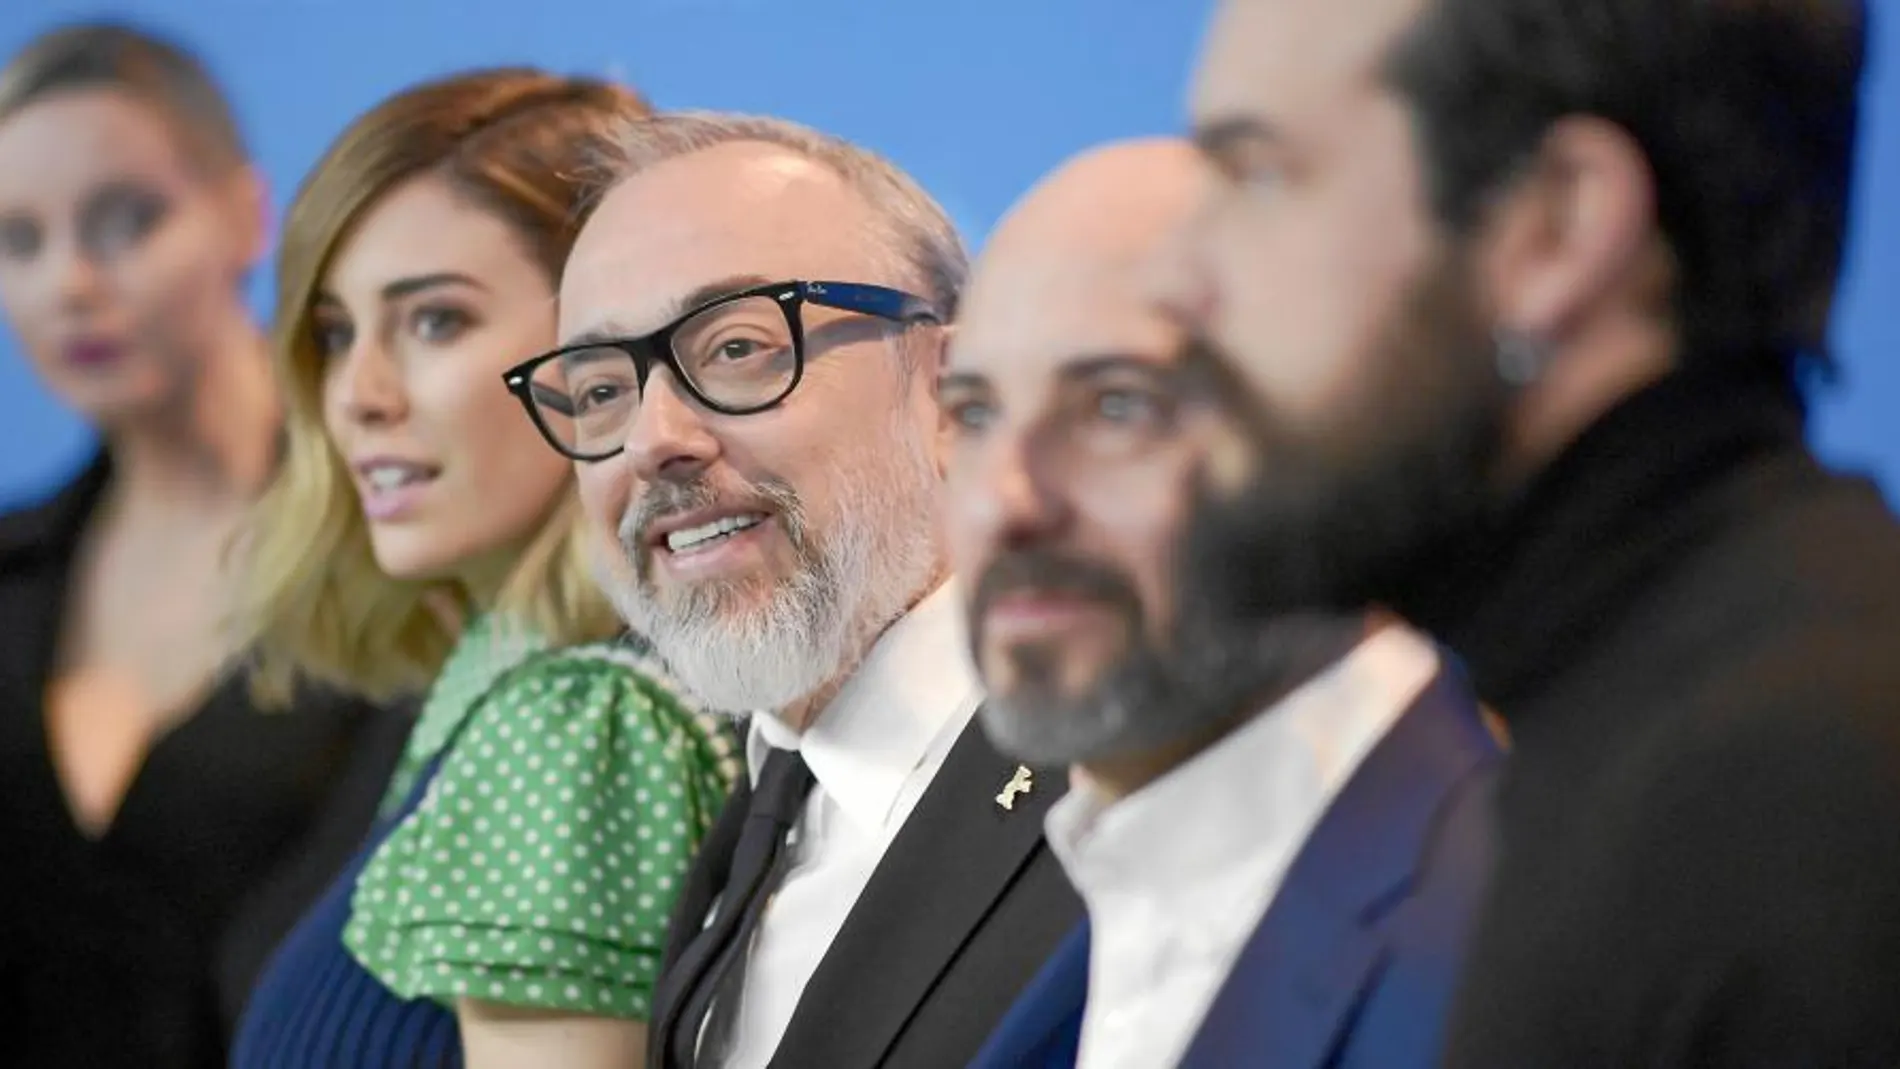 De izquierda a derecha, Carolina Bang, Blanca Suárez, el director Álex De la Iglesia, y Mario Casas, durante la presentación de su nueva película, «El bar», en la Berlinale